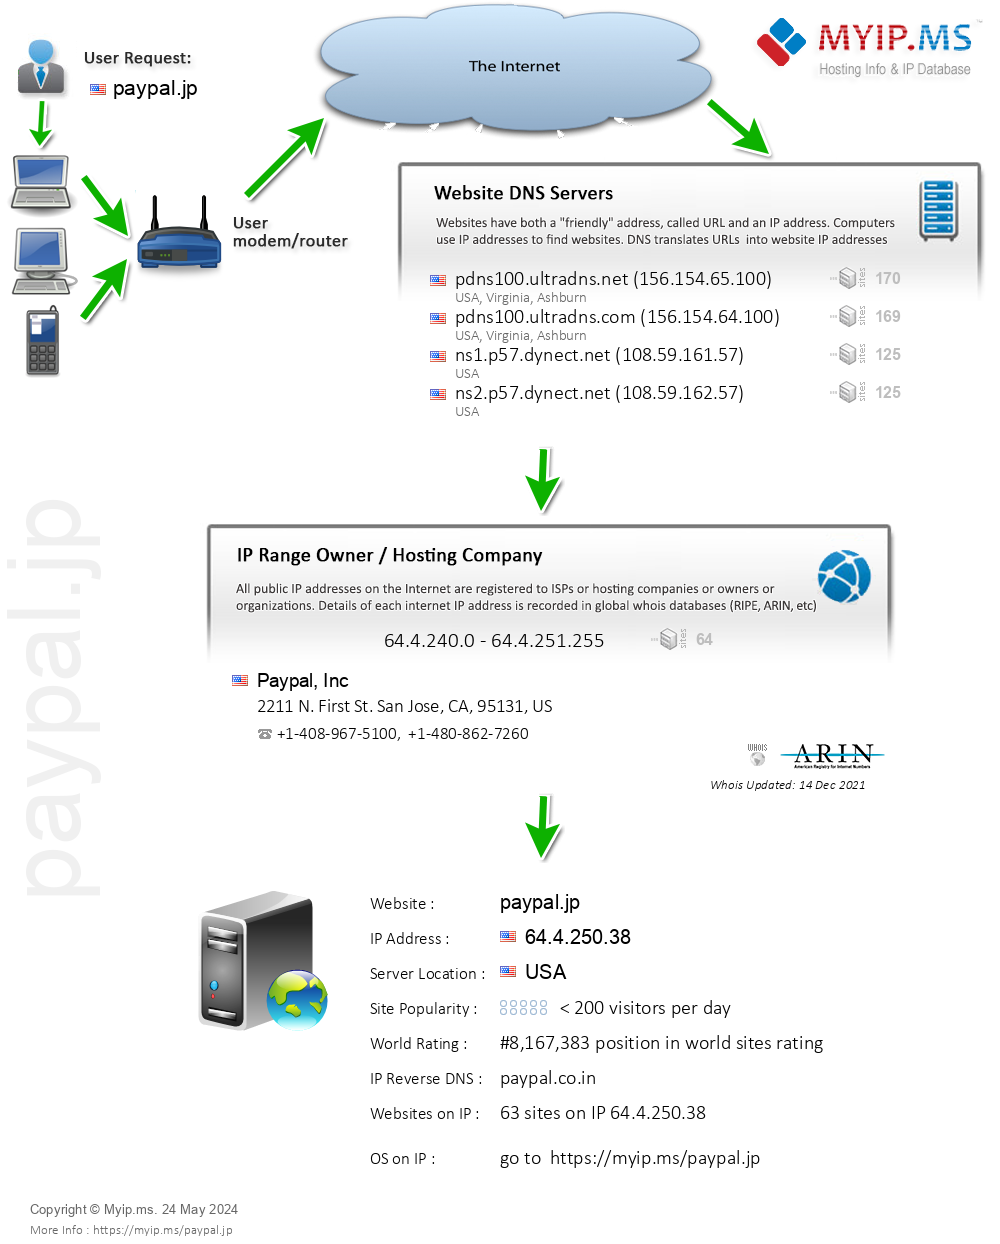 Paypal.jp - Website Hosting Visual IP Diagram